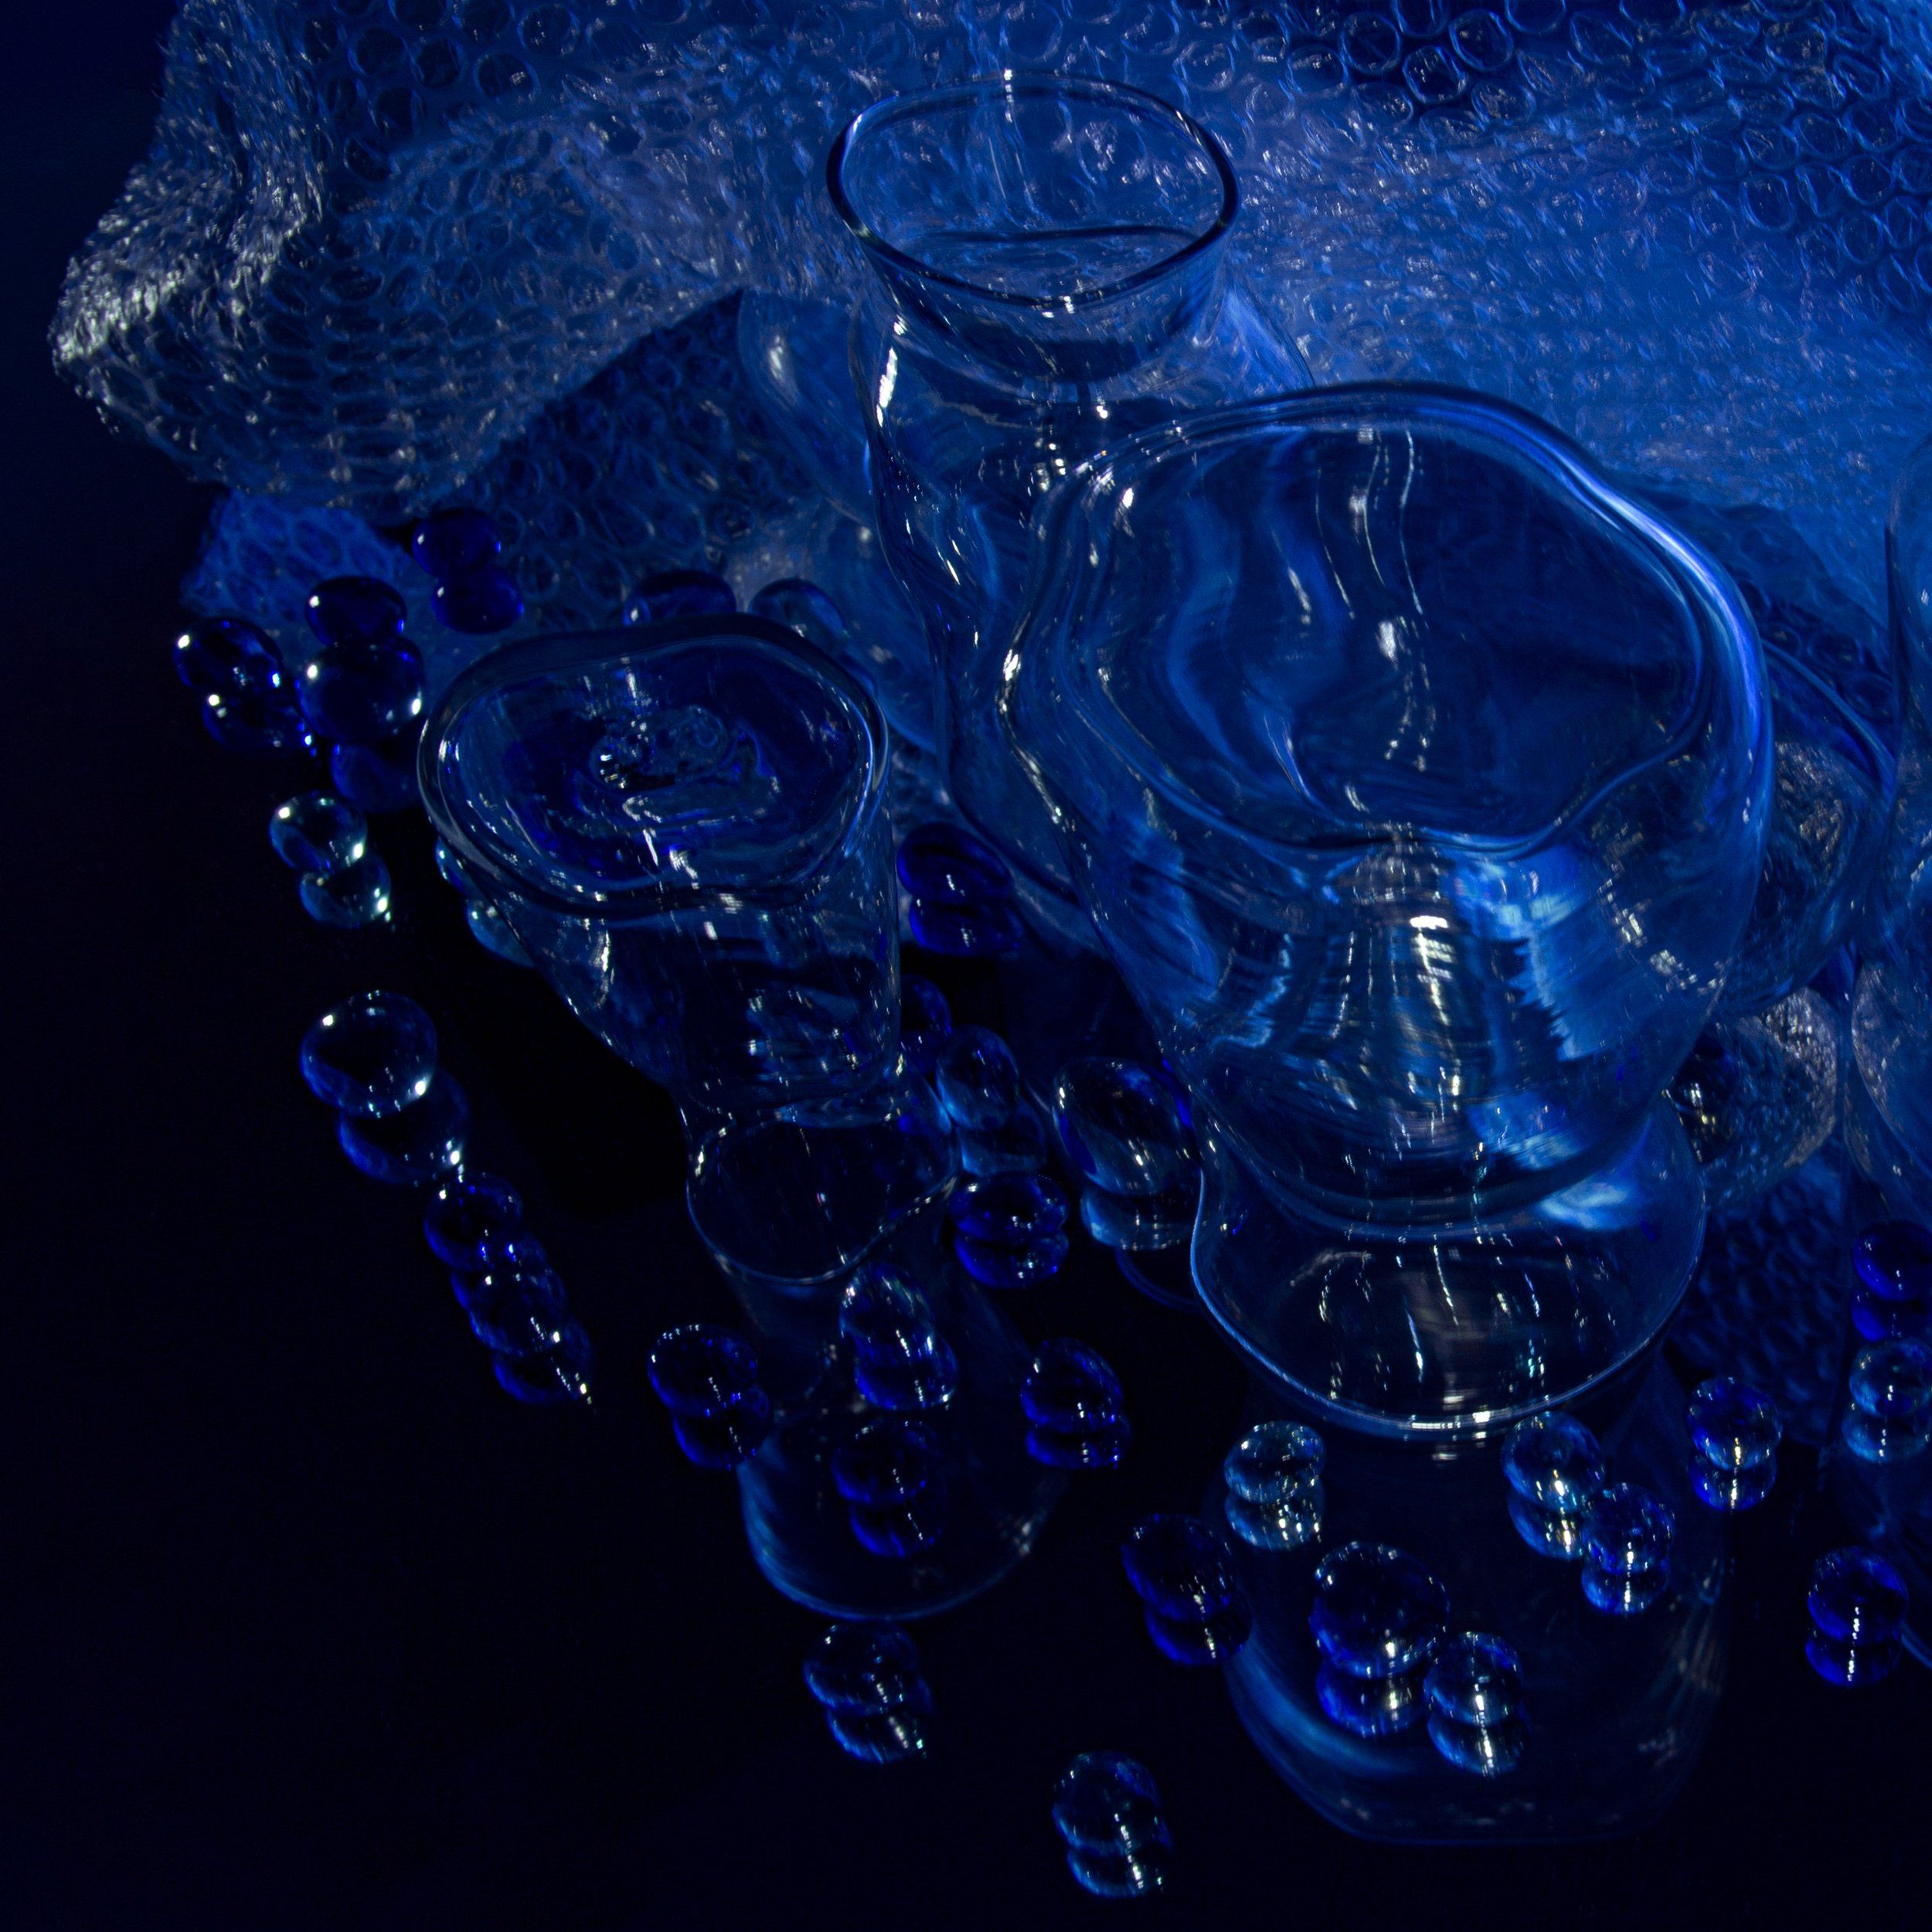 натюрморт, синий, голубой, вазы, стаканы, стекло, шарики, отражение, зеркало , Виктория Гусар